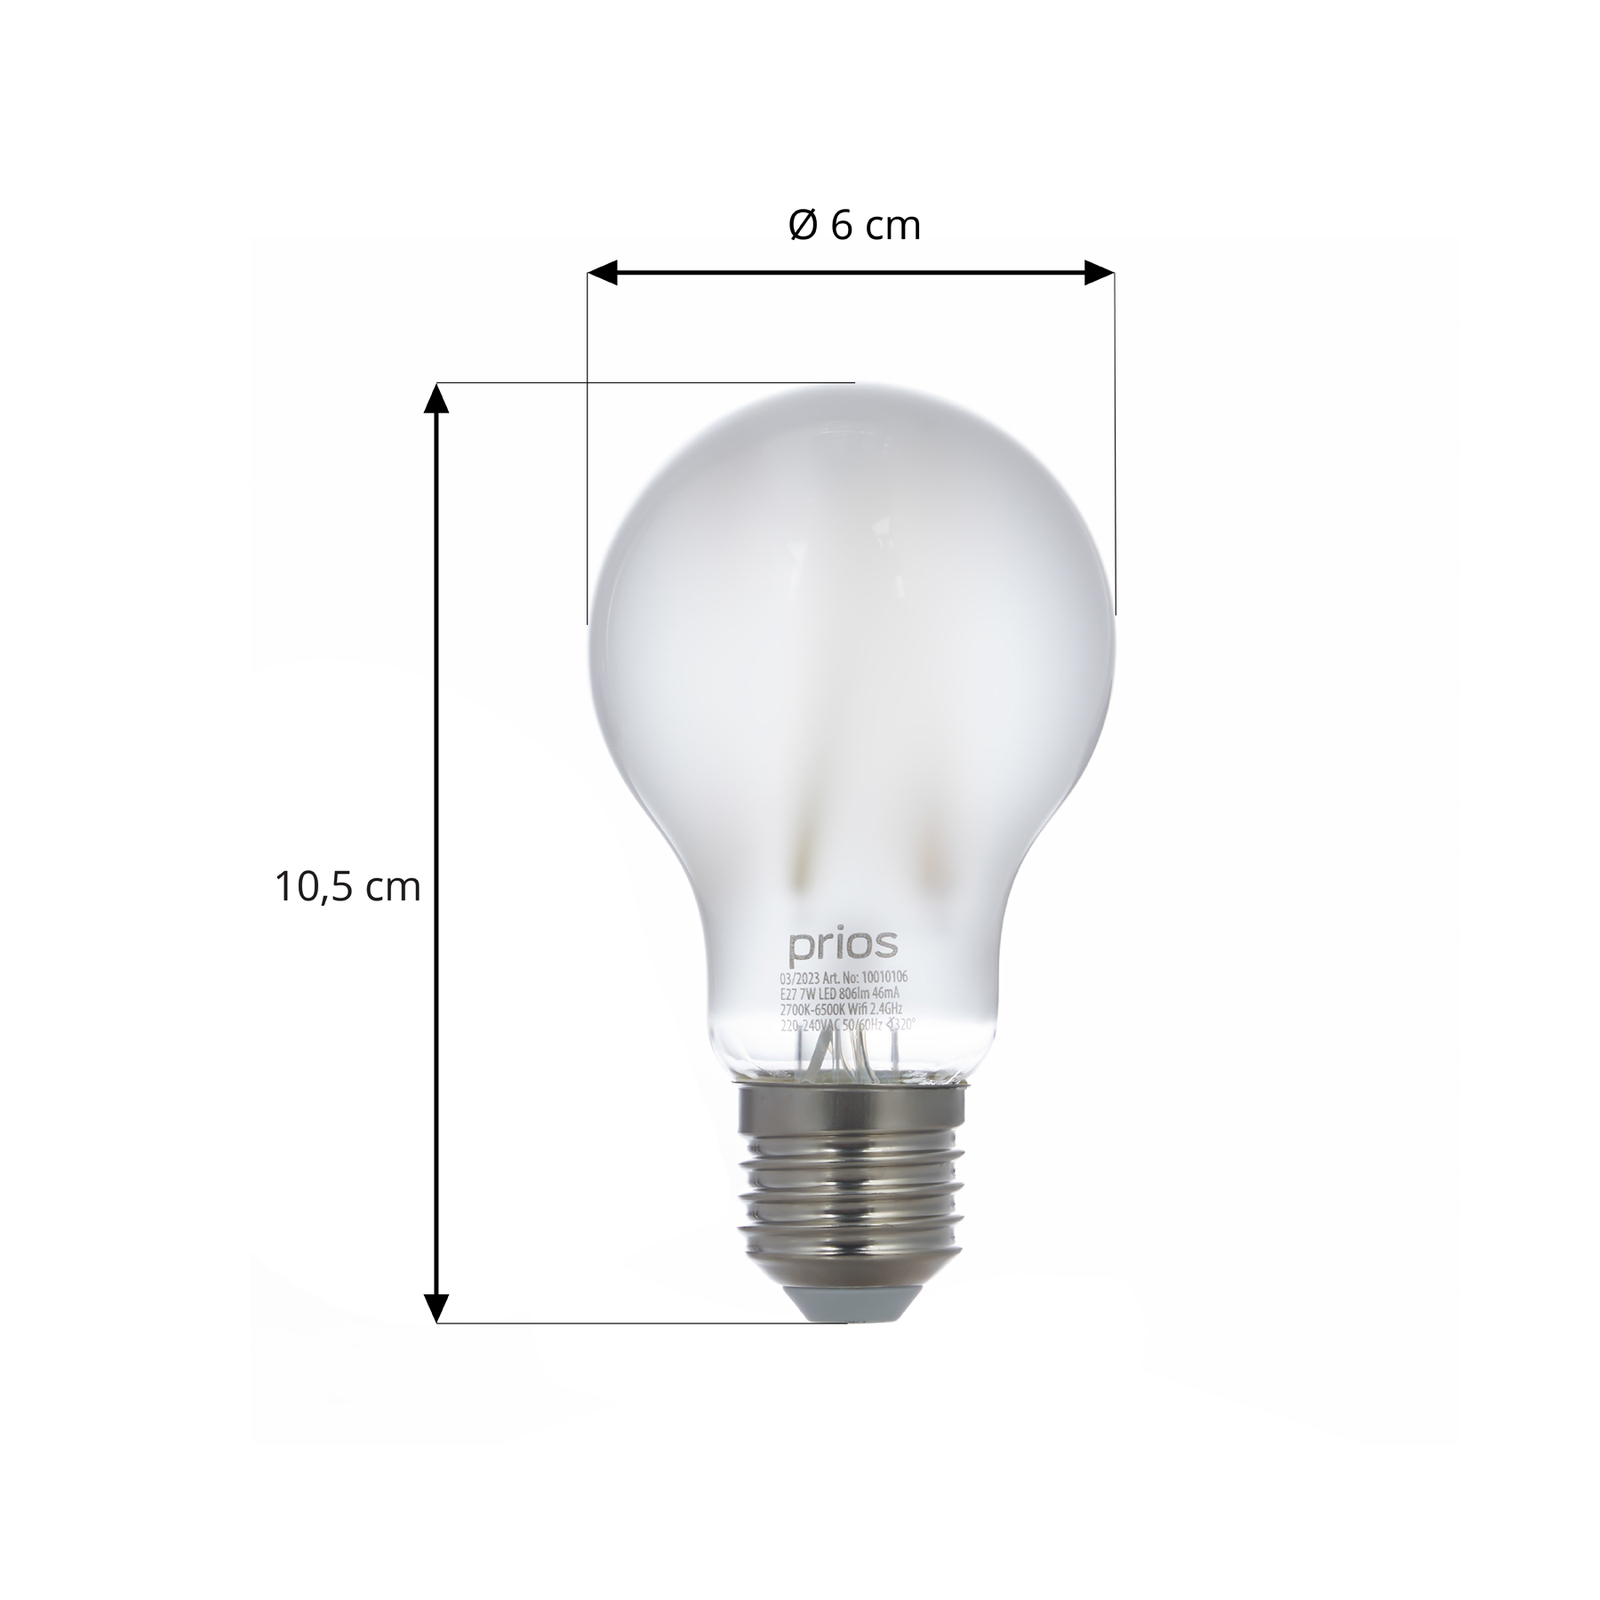 Smart LED-E27-pære A60 7W WLAN matt tunable white